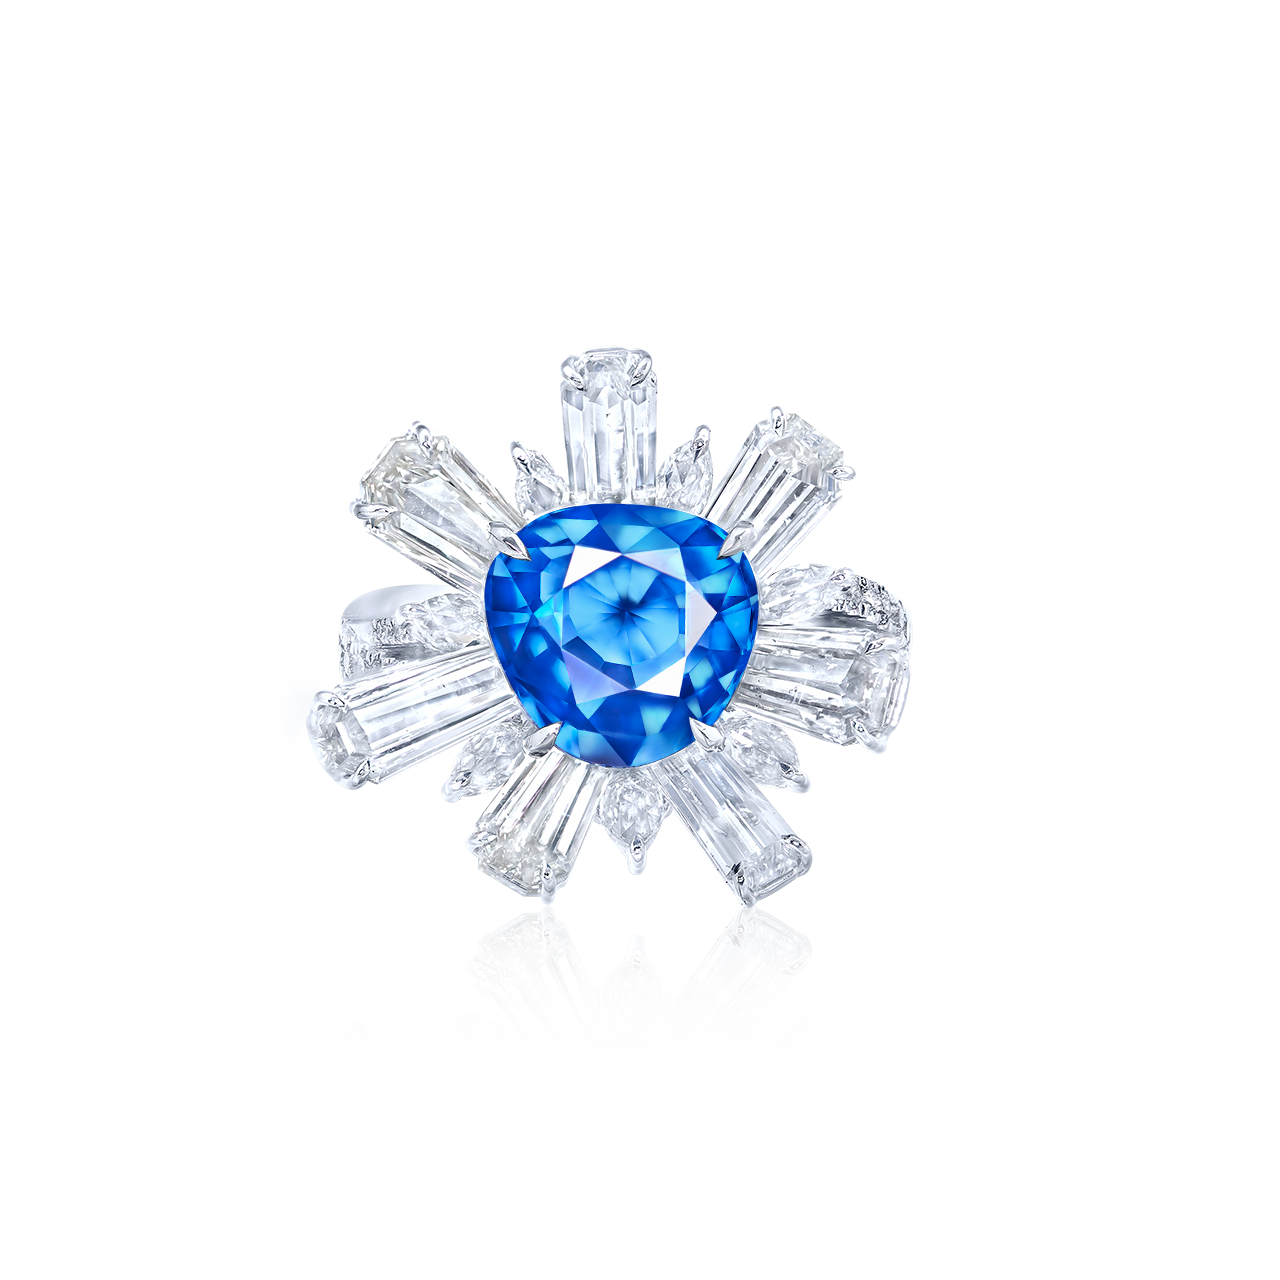 4.10 克拉 越南天然無燒鈷藍尖晶鑽戒
VIETNAM COBALT BLUE SPINEL 
AND DIAMOND RING